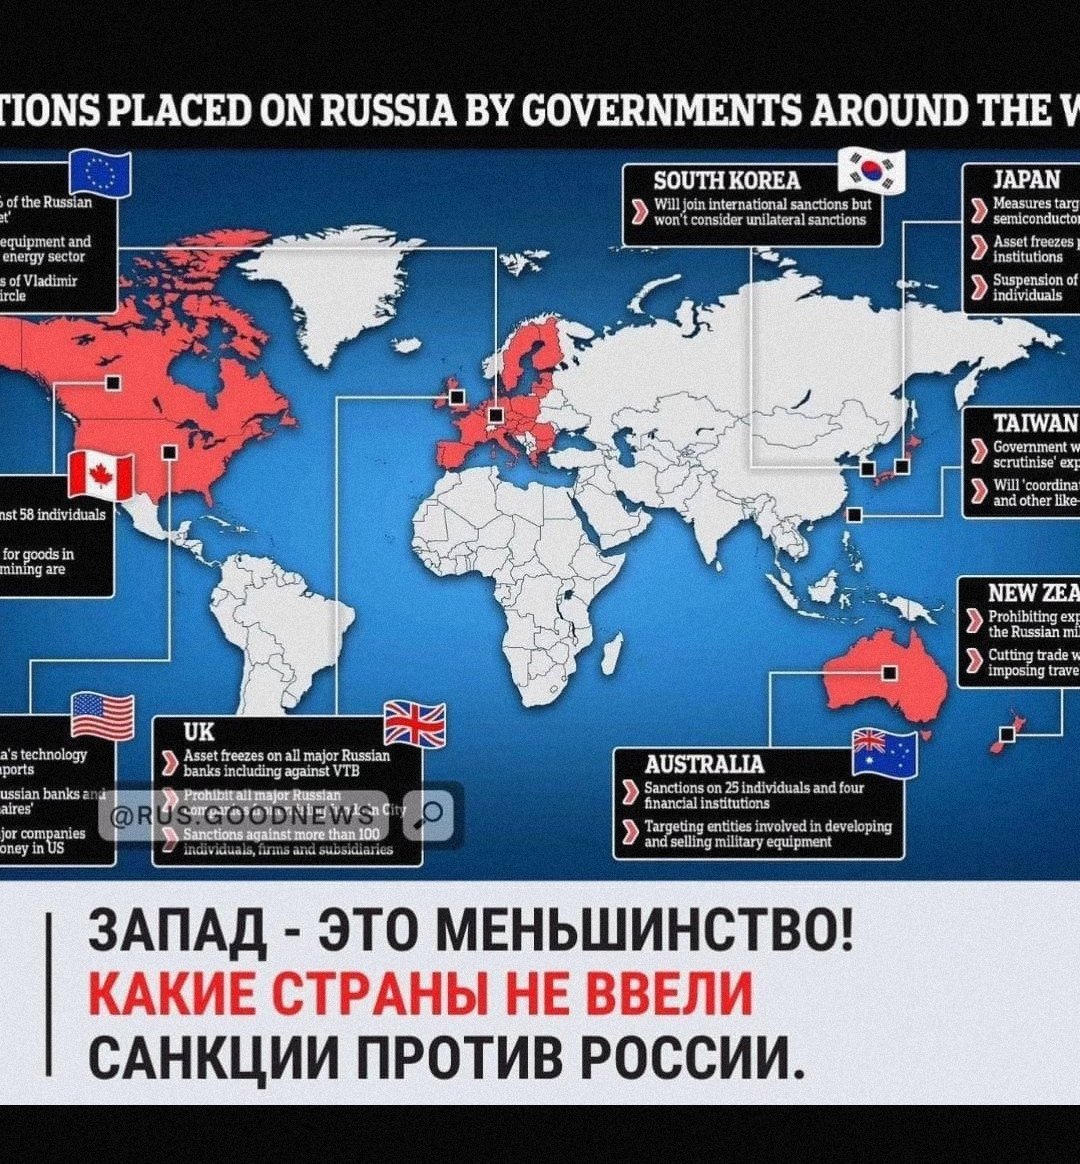 Ввели санкции против мир. Страны против России. Весь мир против России. Страны которые ввели санкции. Страны поддерживающие Россию и Украину.